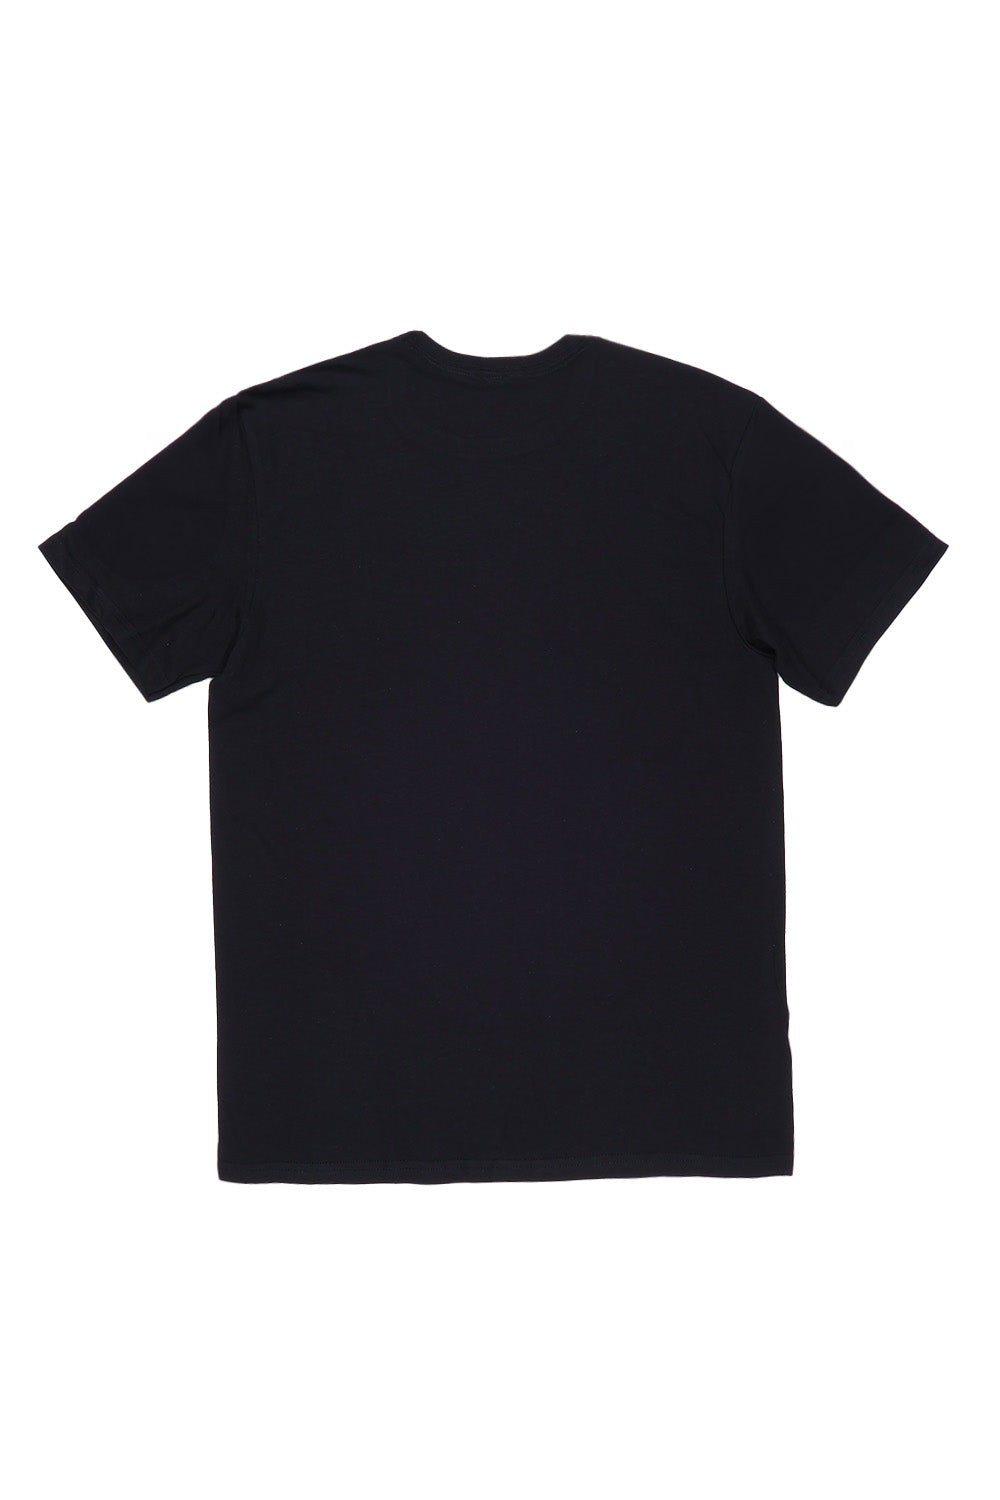 France T-Shirt in Black (Custom Packs)